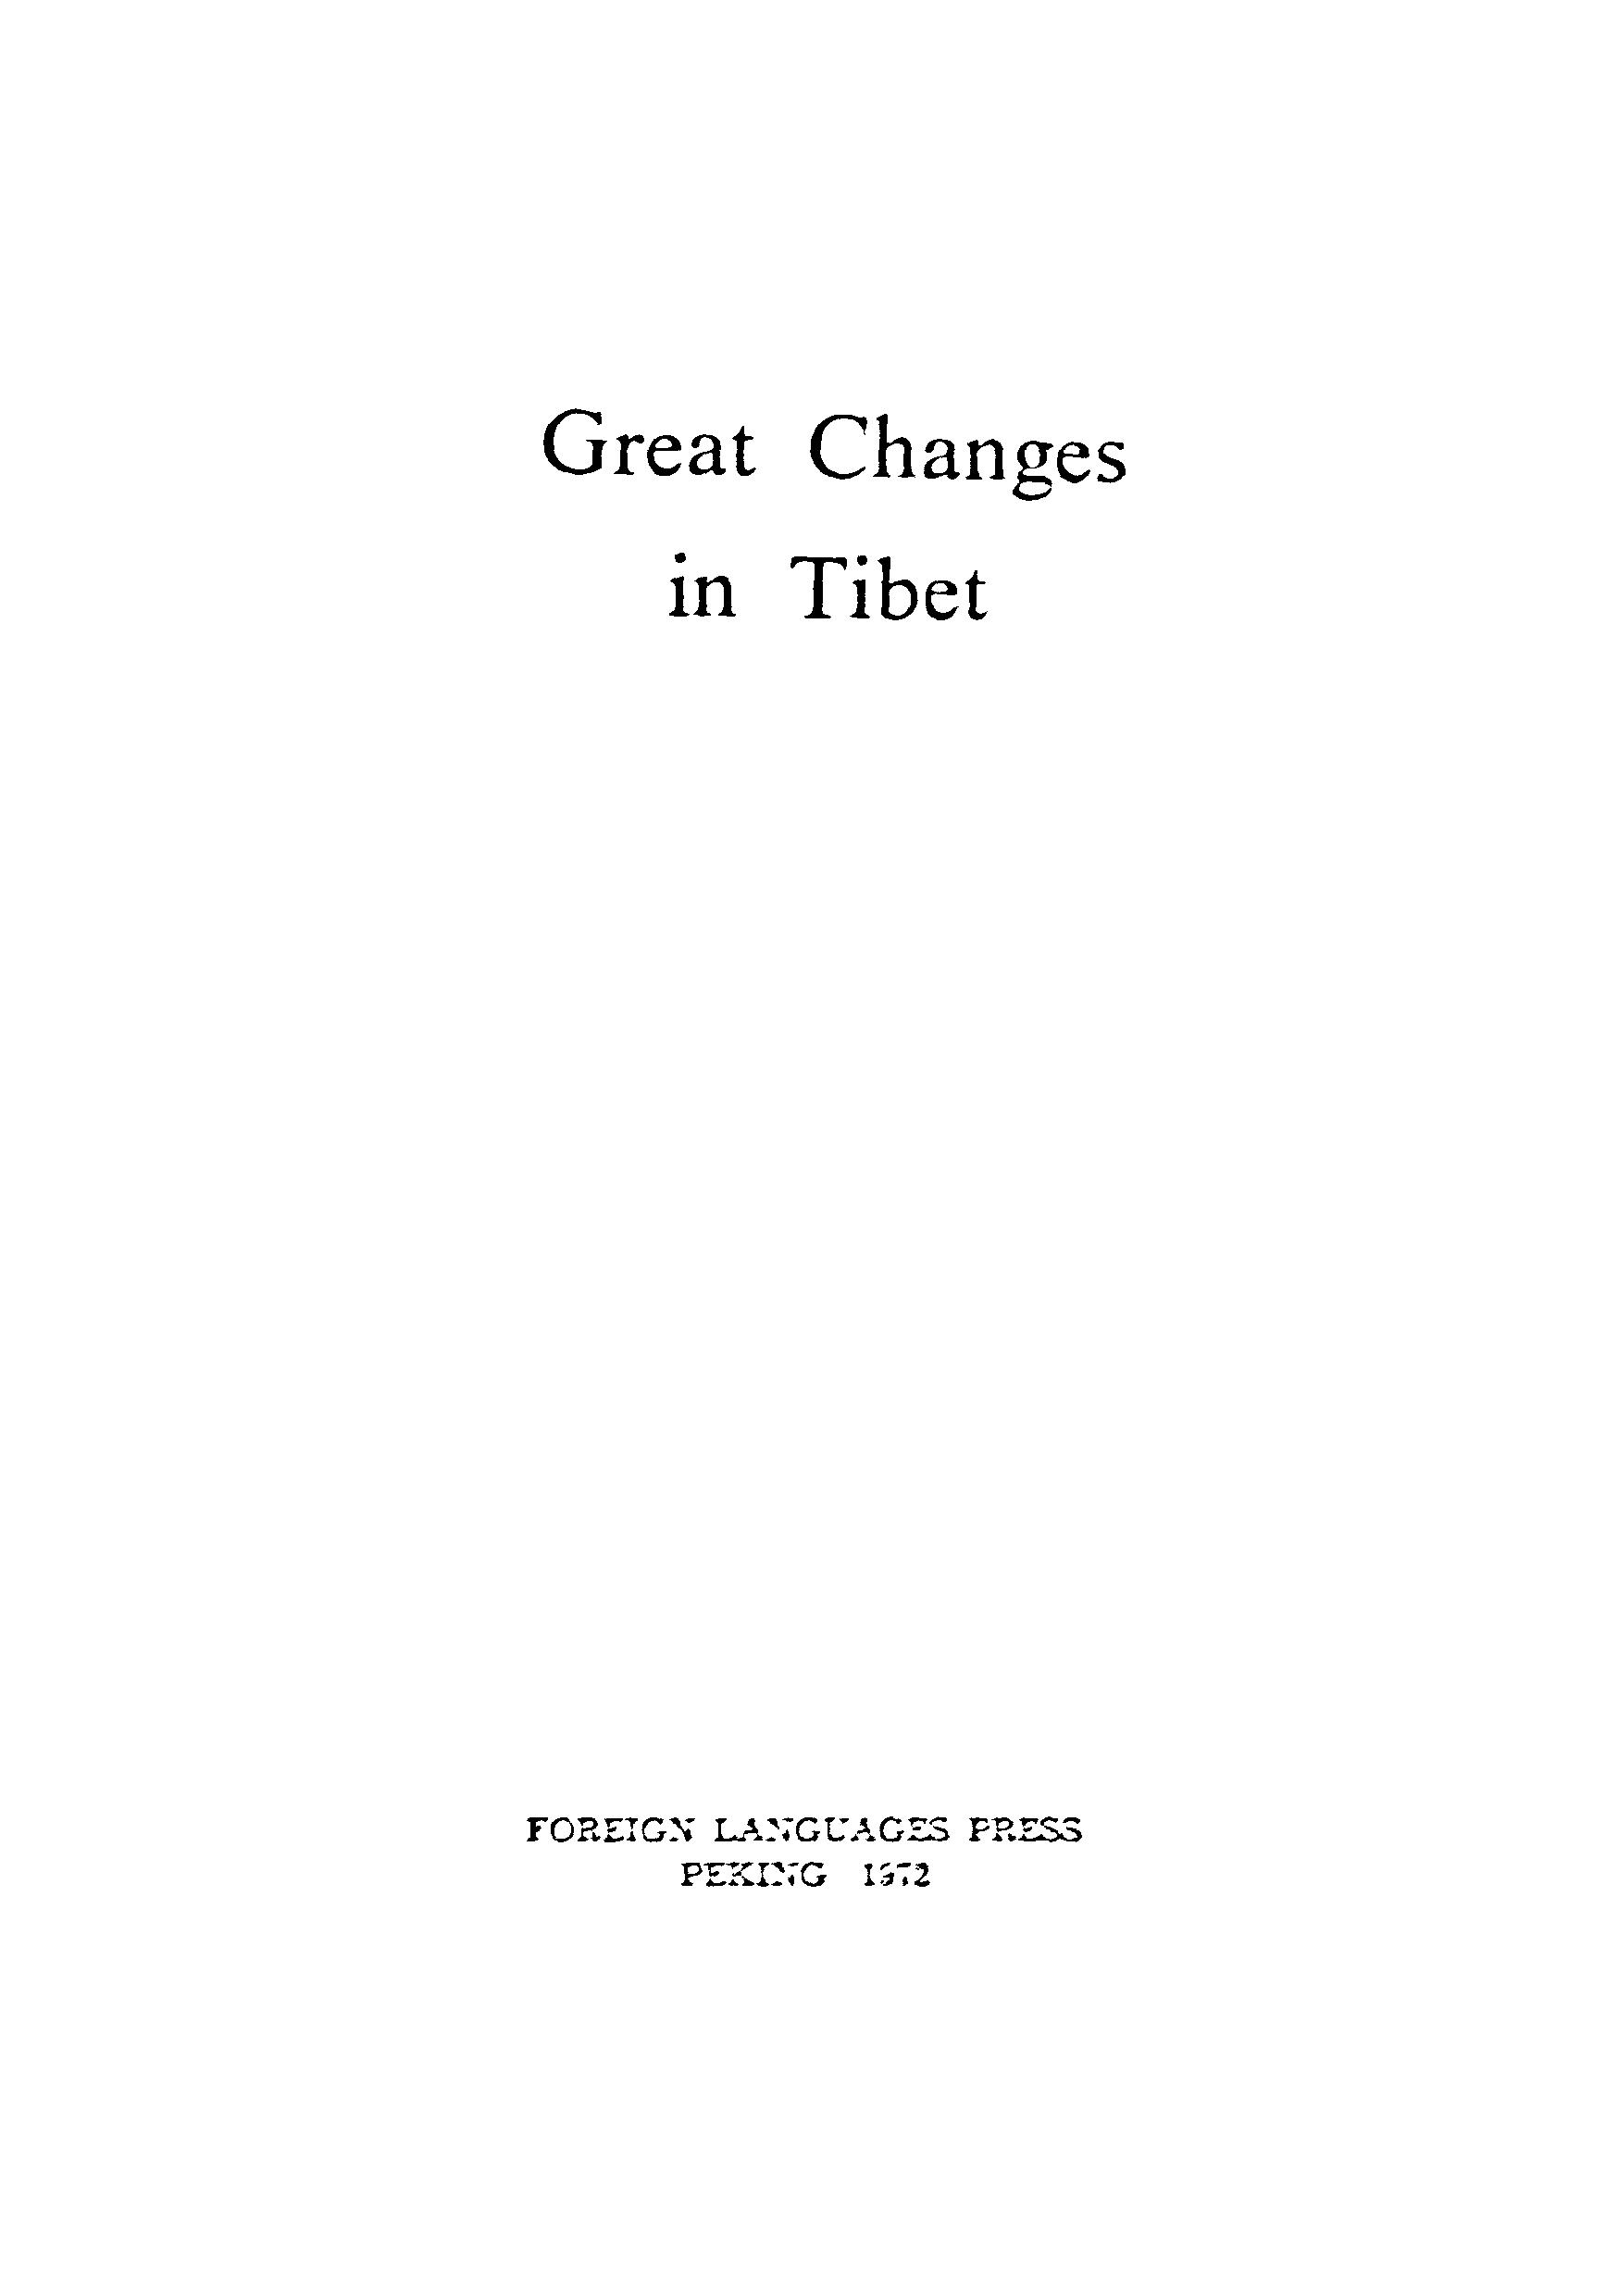 Great changes in Tibet